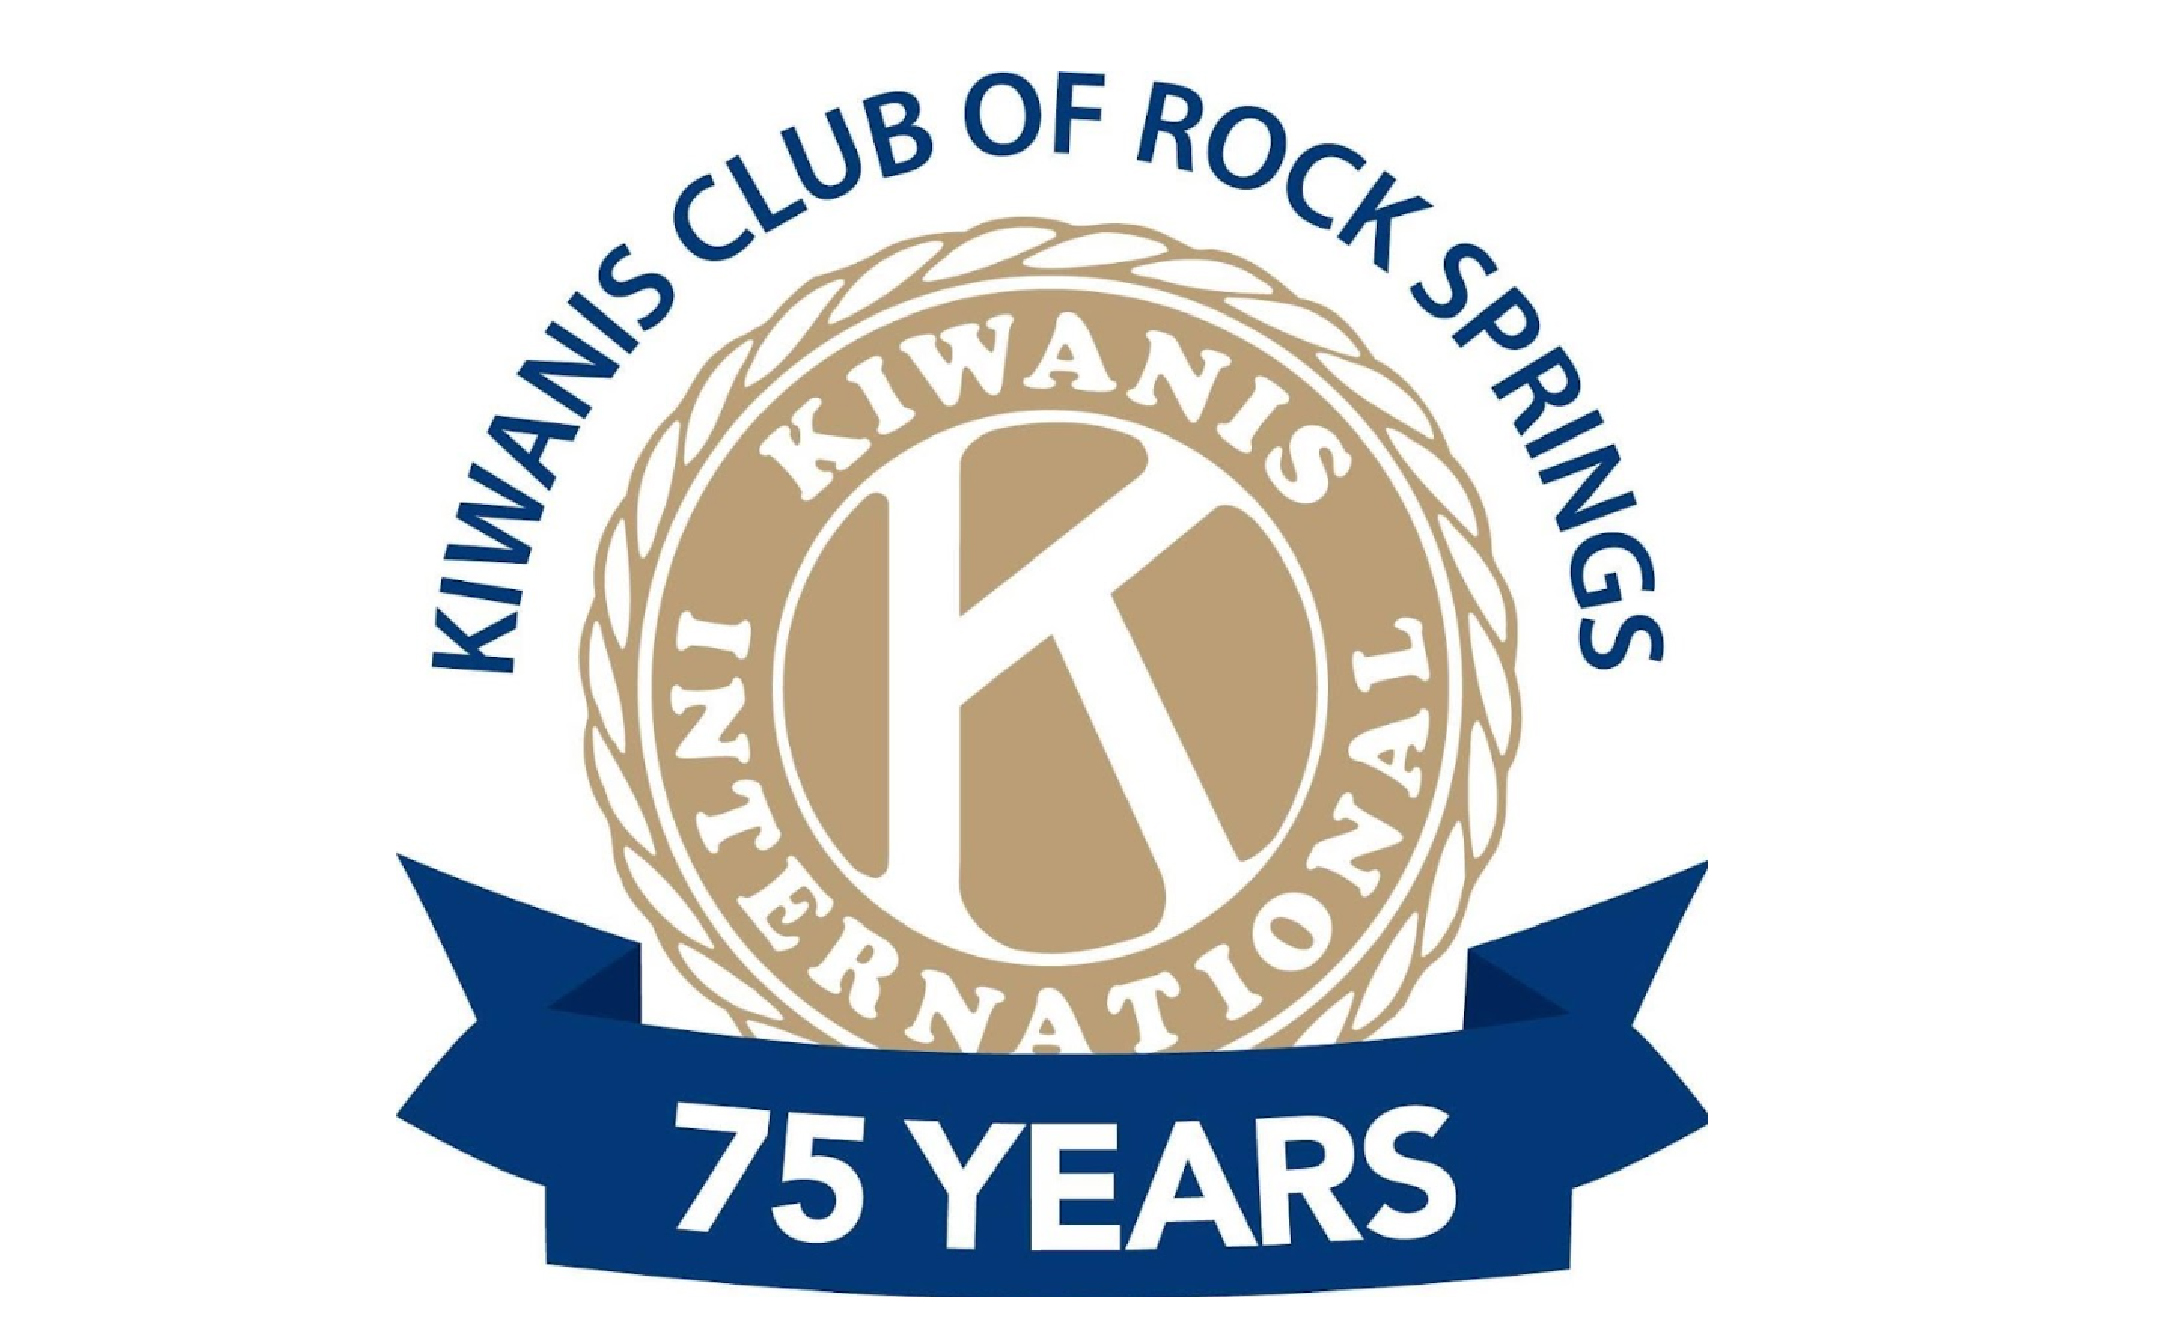 J. Kiwanis Club of Rock Springs (Tier 3)